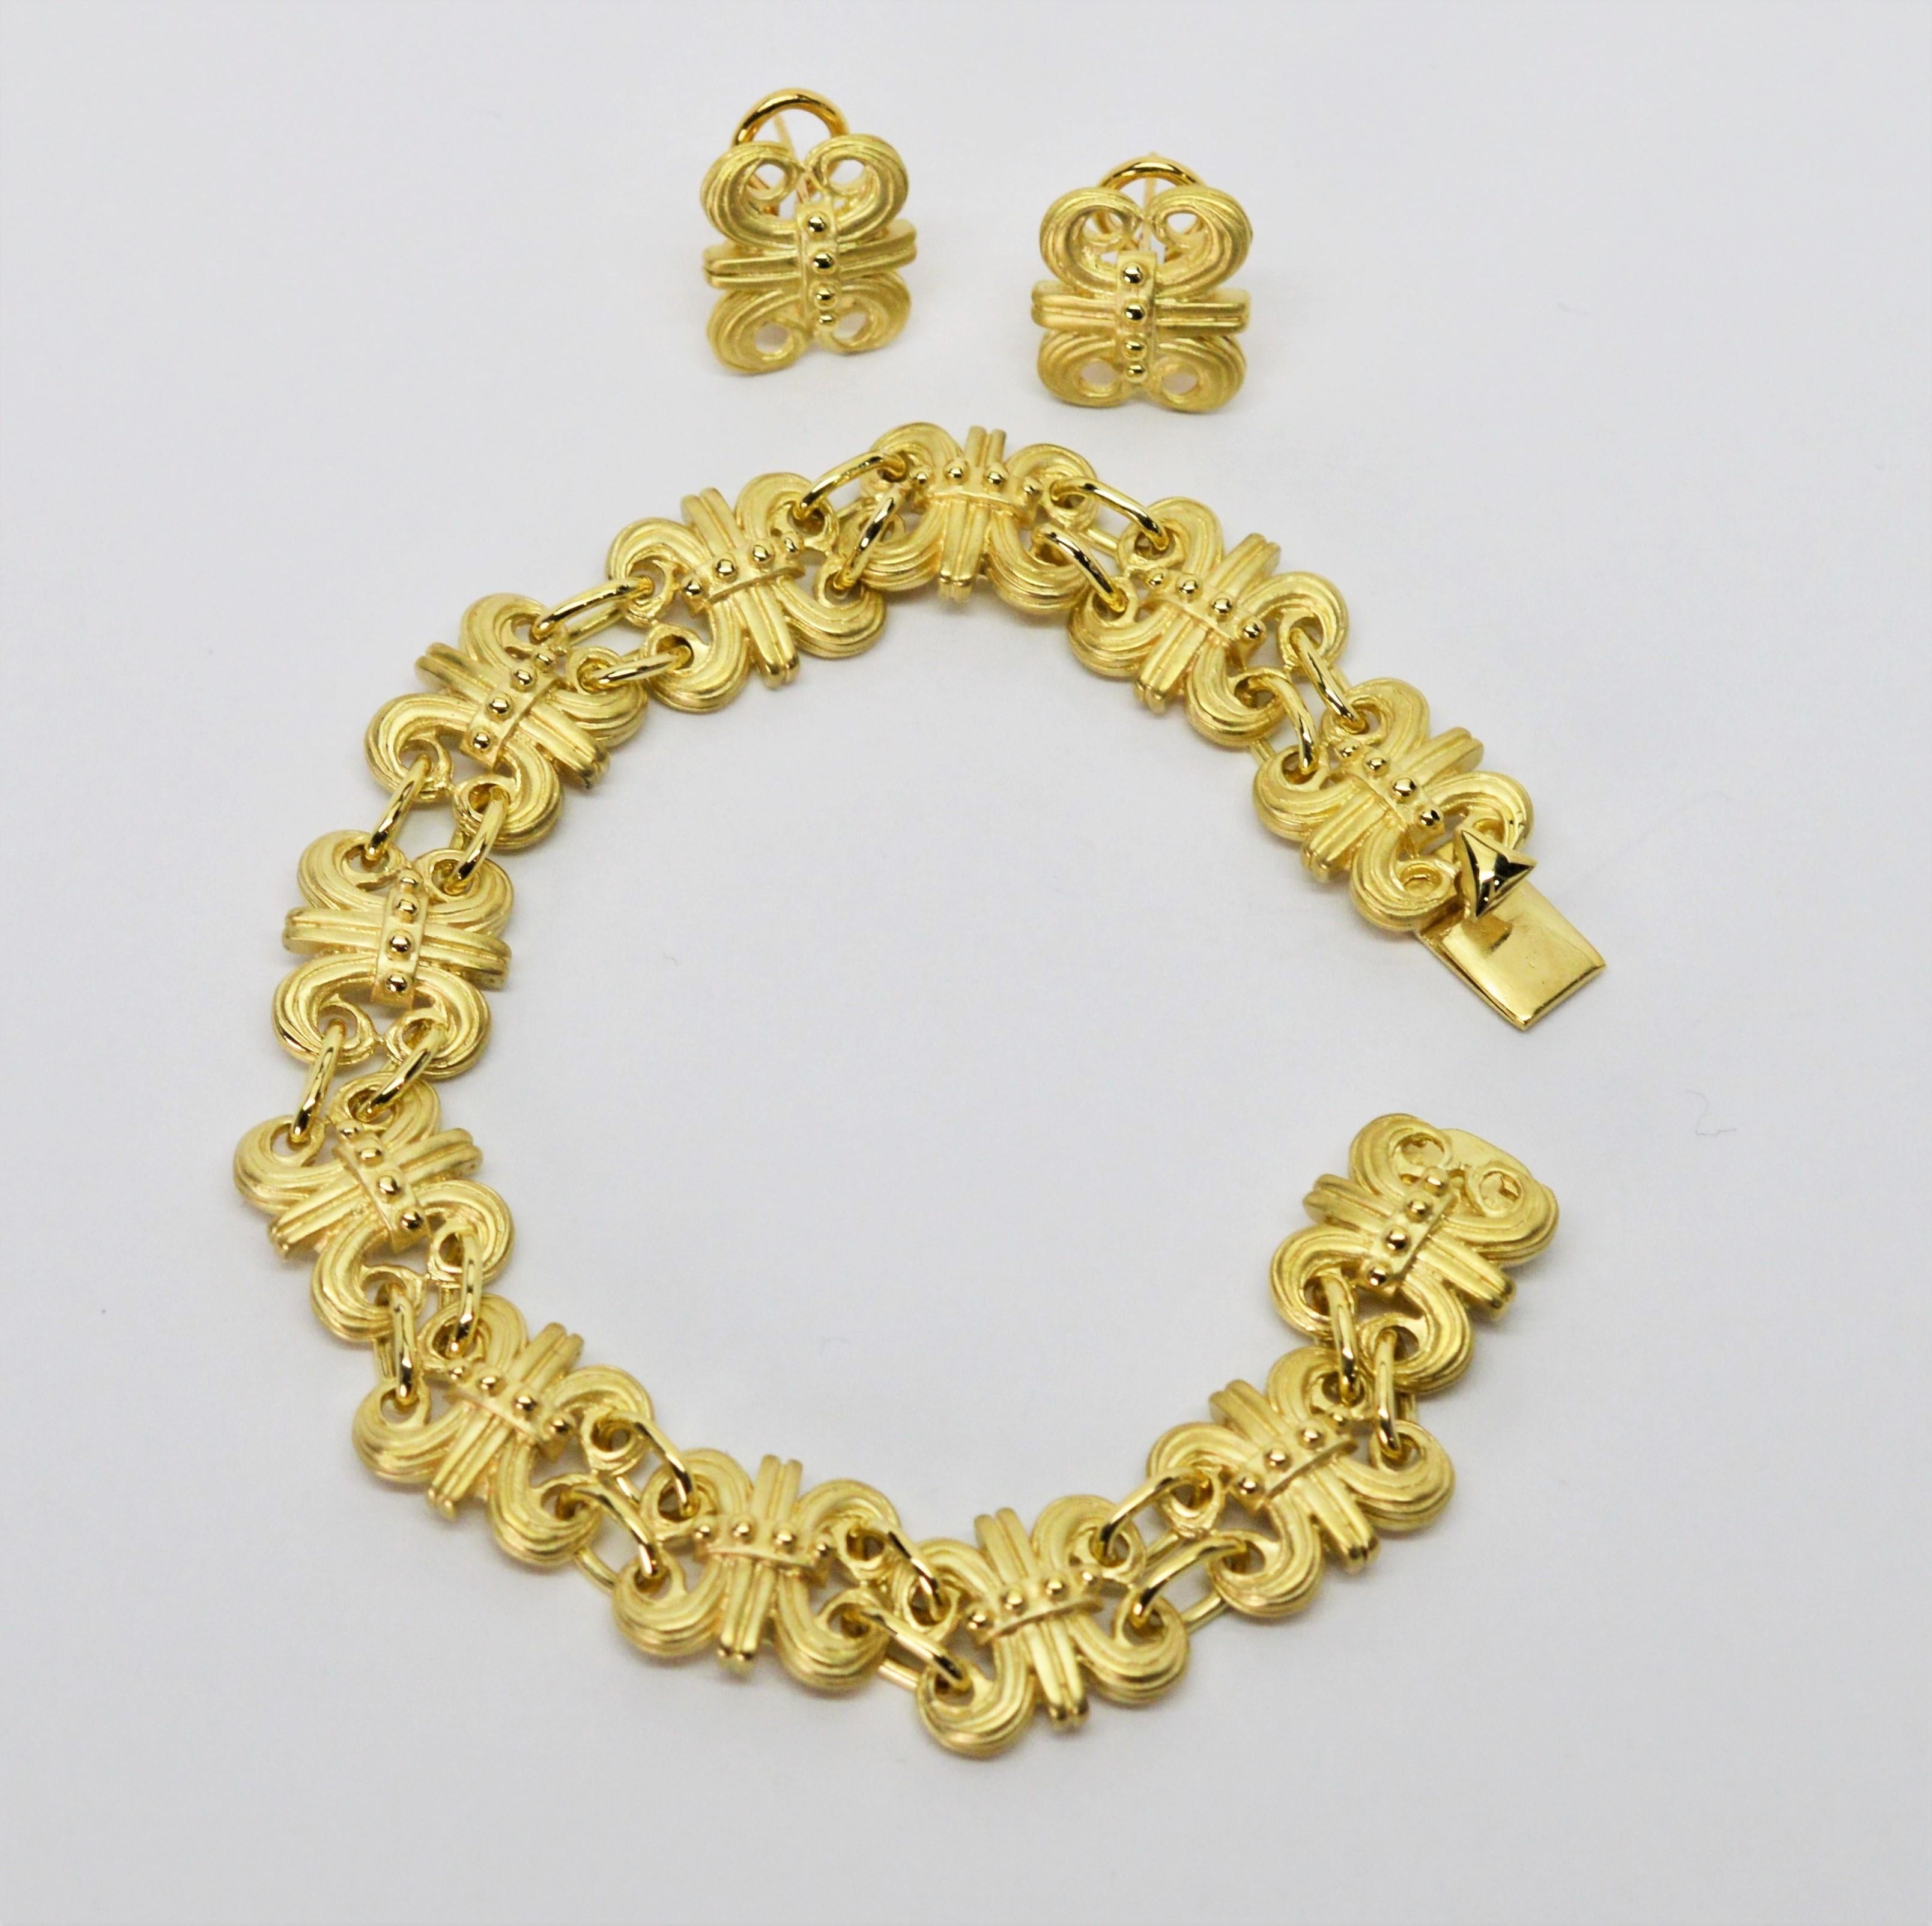 Un ensemble exquis, ce bracelet fleur de lis en or jaune 14k 18 carats satiné avec des accents en or poli brillant et des boucles d'oreilles assorties est d'une grande finesse. Terminé par un fermoir en forme de boîte, le bracelet à maillons mesure